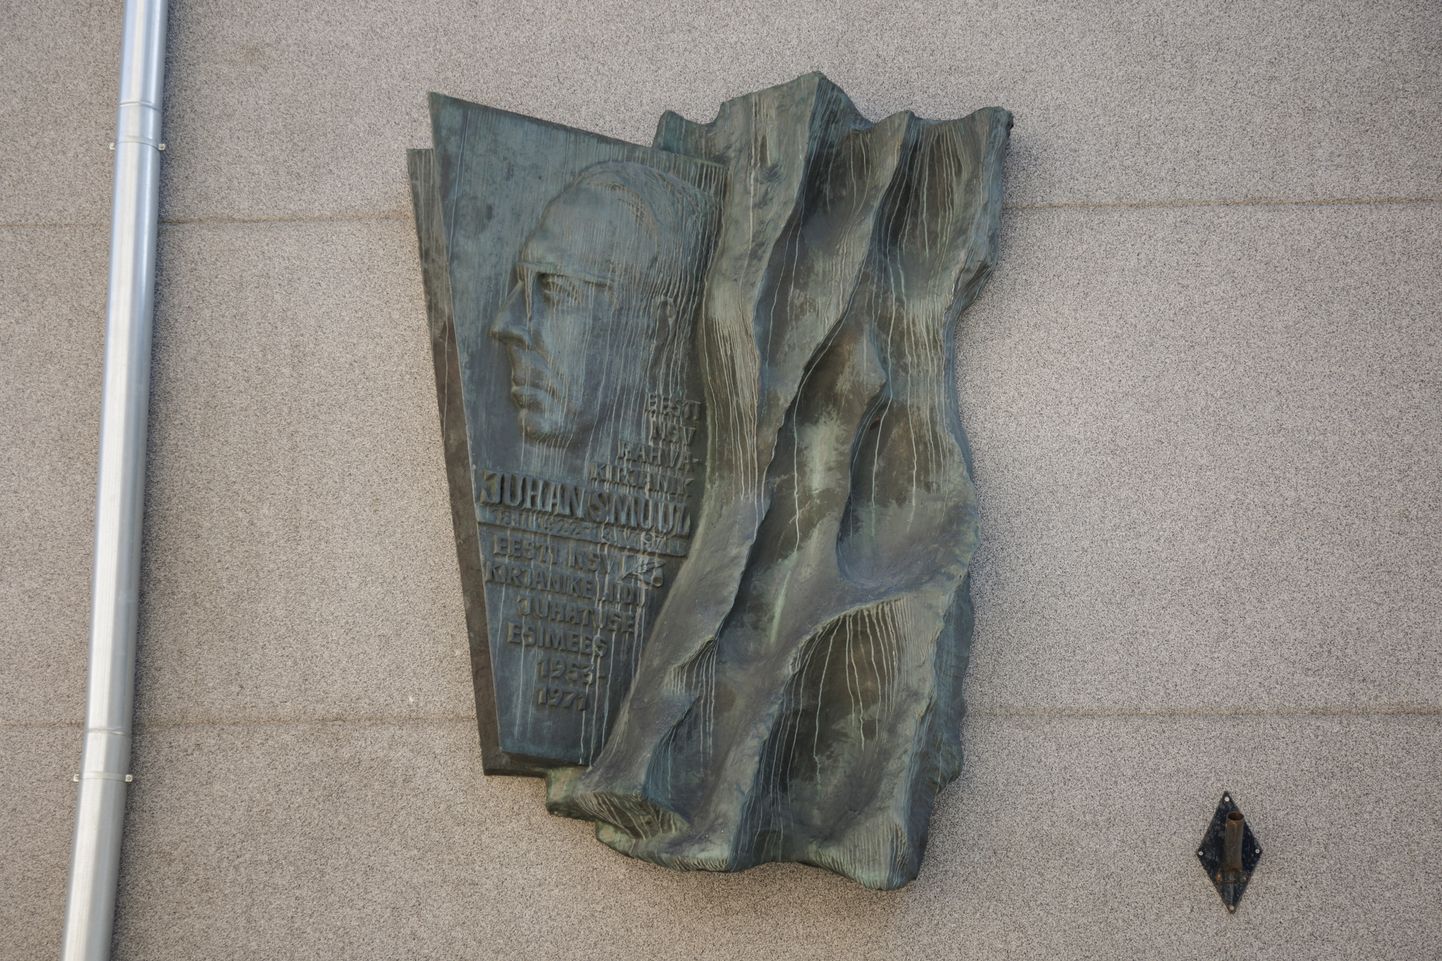 Барельеф Юхана Смуула был установлен в 1971 году.